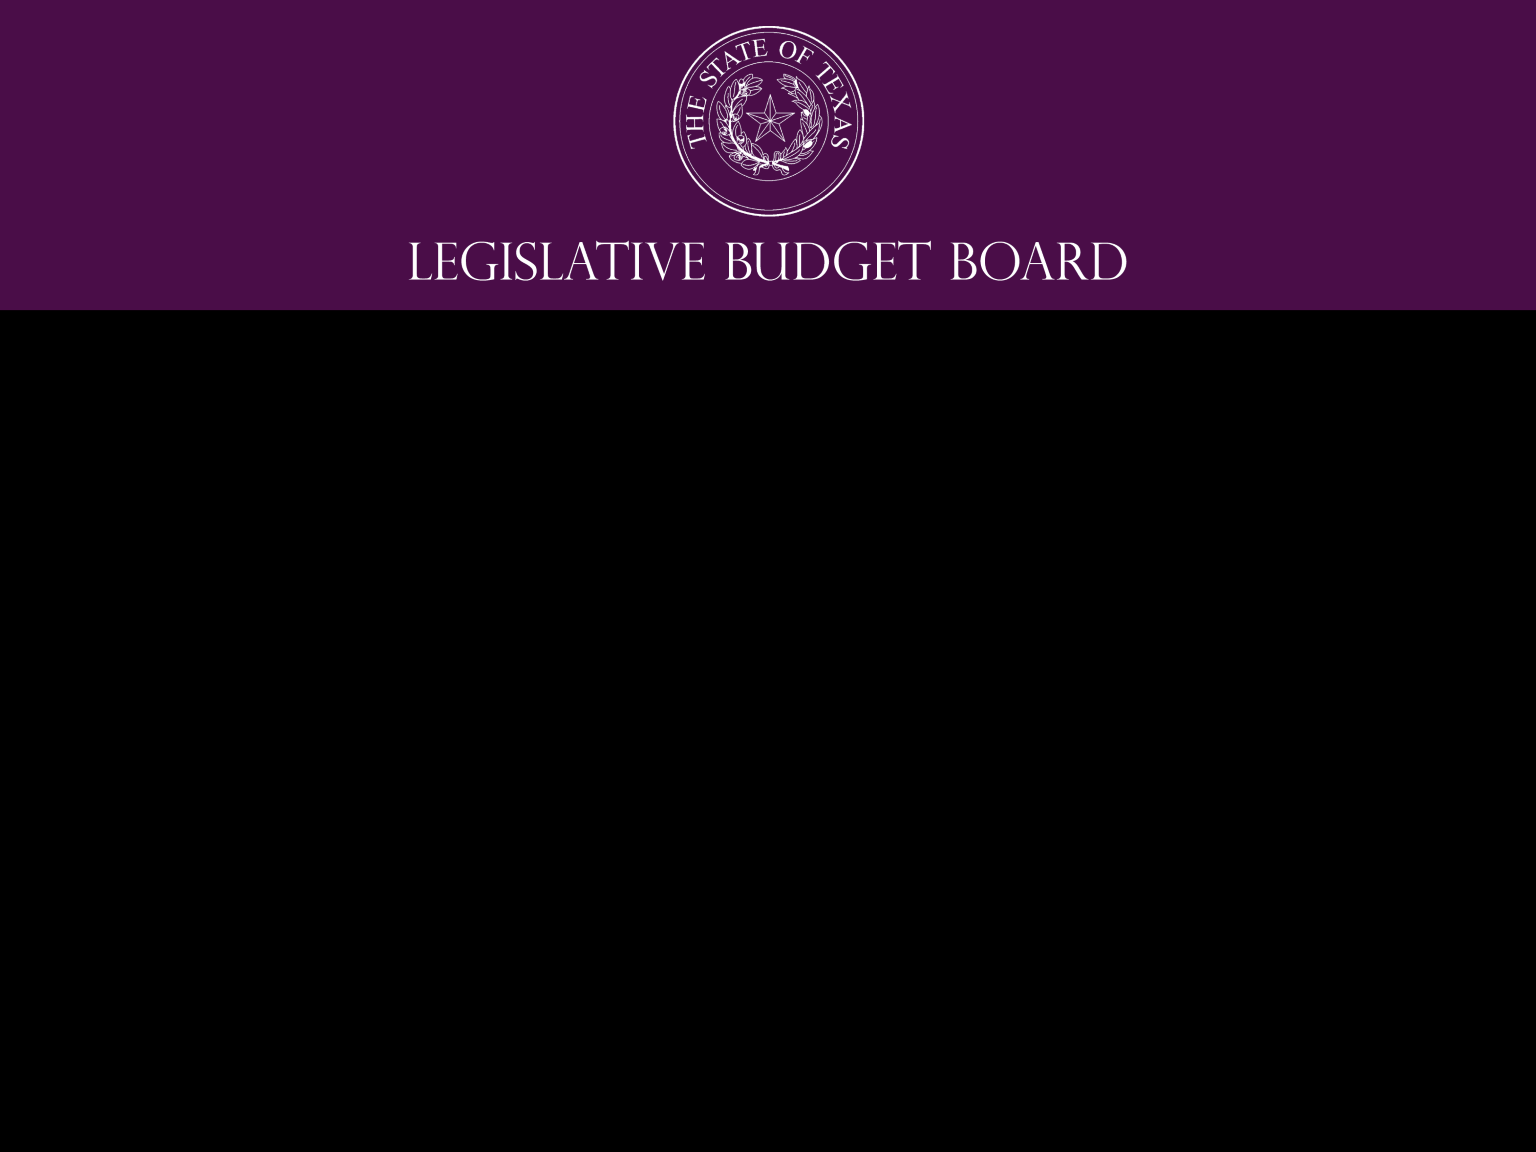 Contact the LBB Legislative Budget